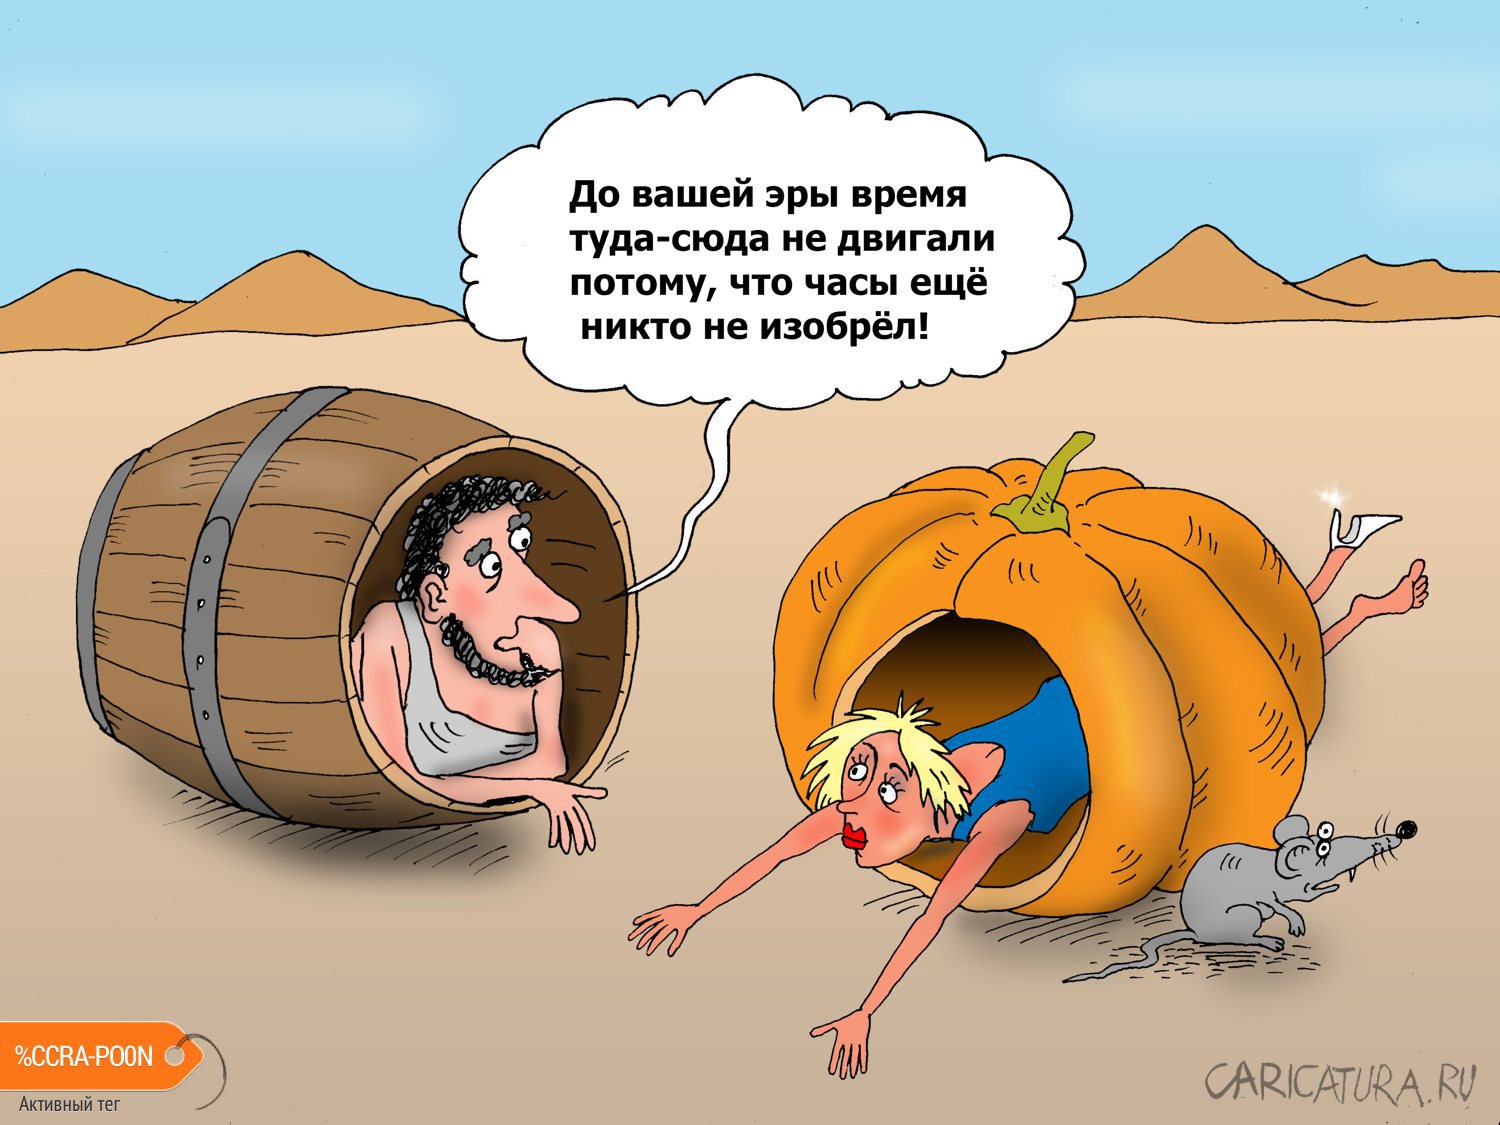 Карикатура "Час назад", Валерий Тарасенко